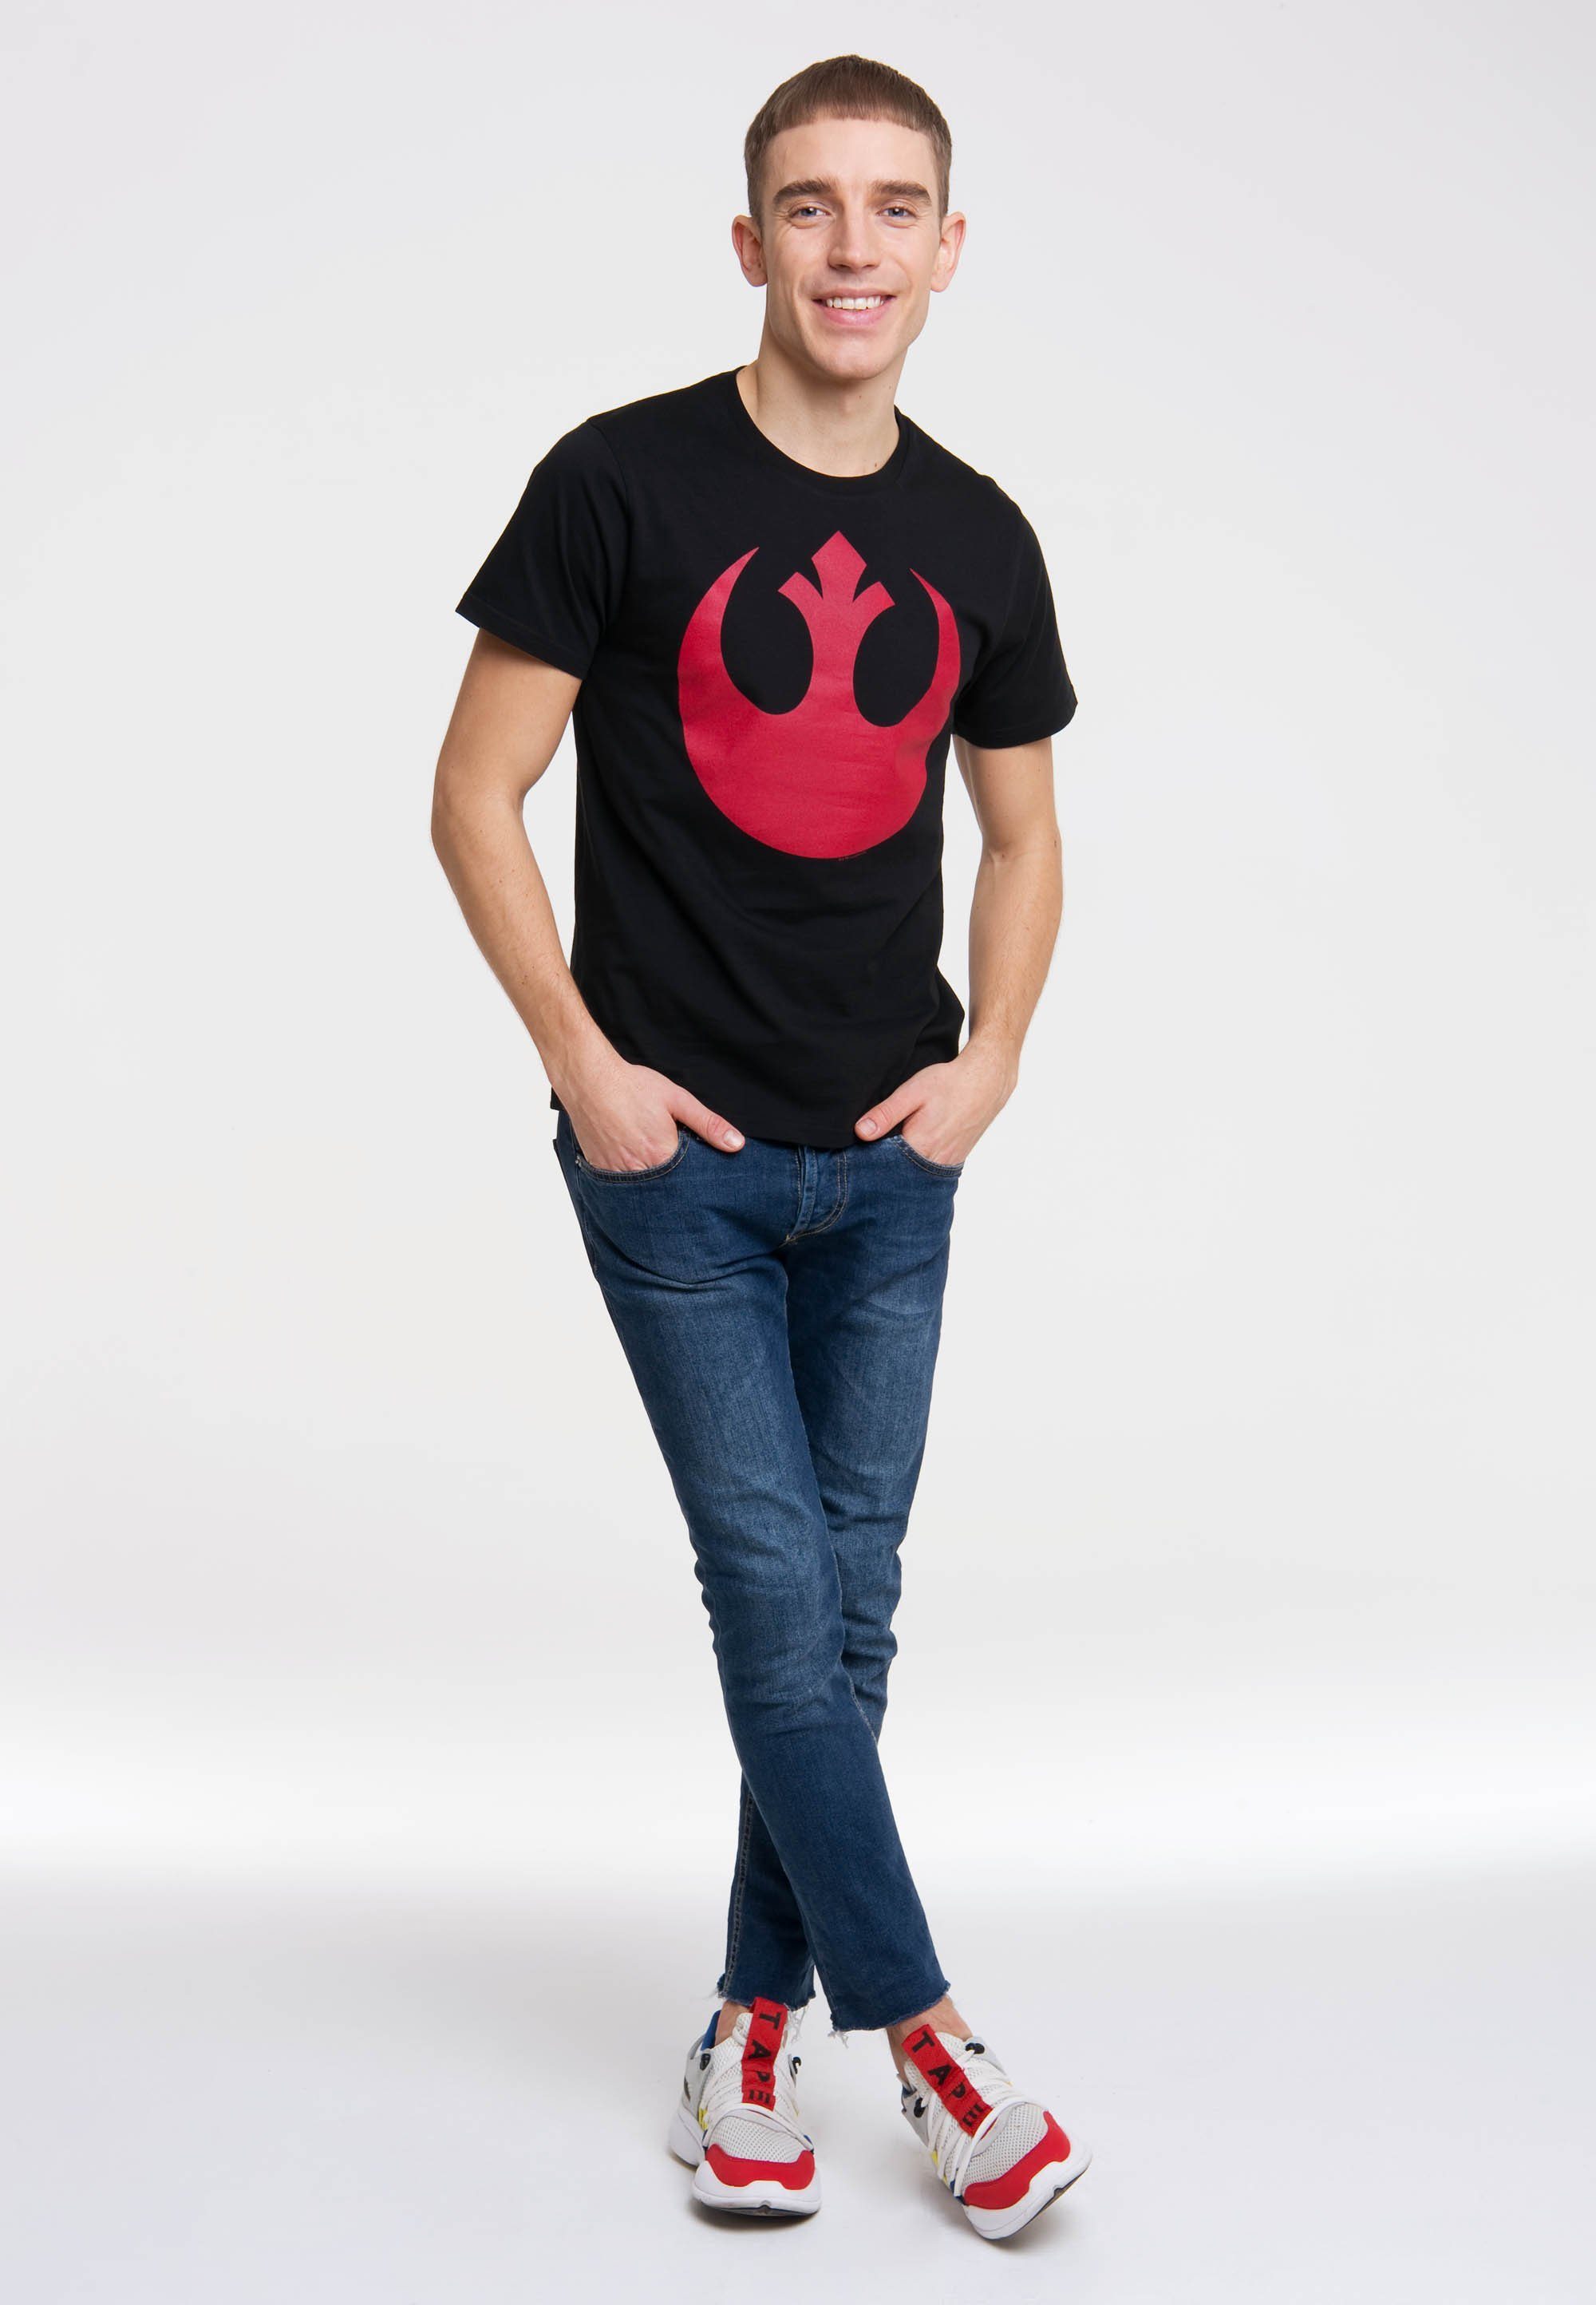 - Star Logo Wars Wars-Motiv Star T-Shirt LOGOSHIRT mit Rebel Alliance